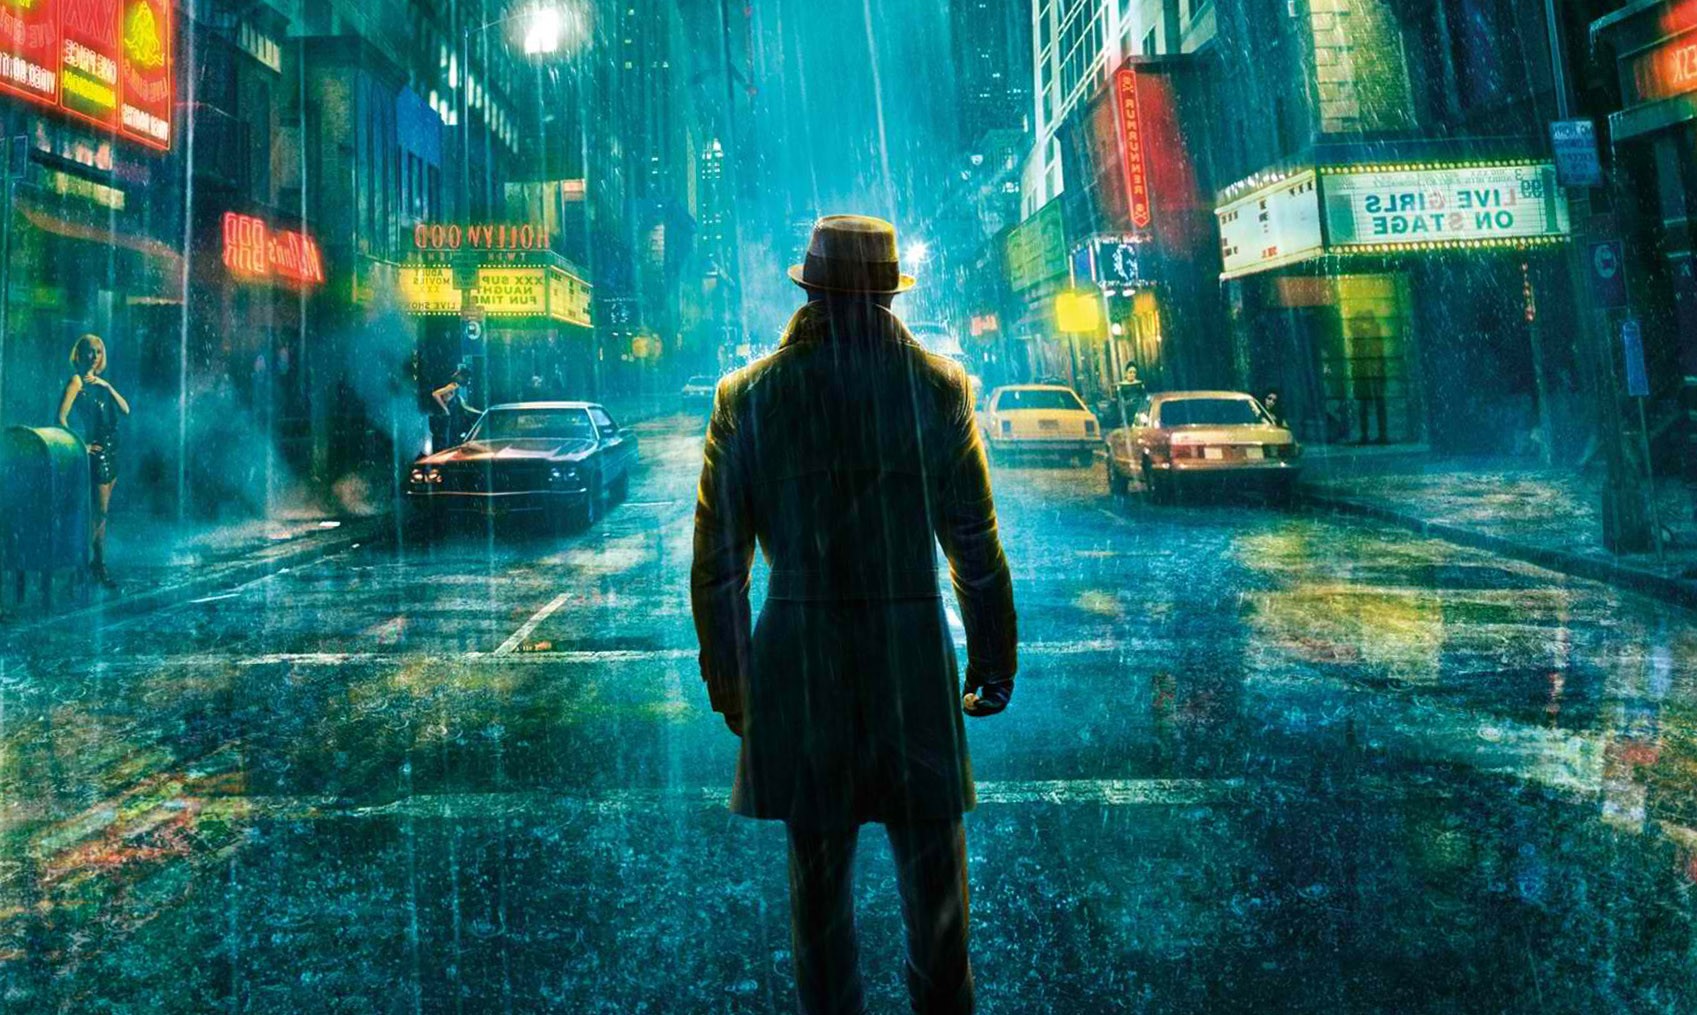 fond d'écran de film de héros,pluie,zone urbaine,ténèbres,rue,compositing numérique